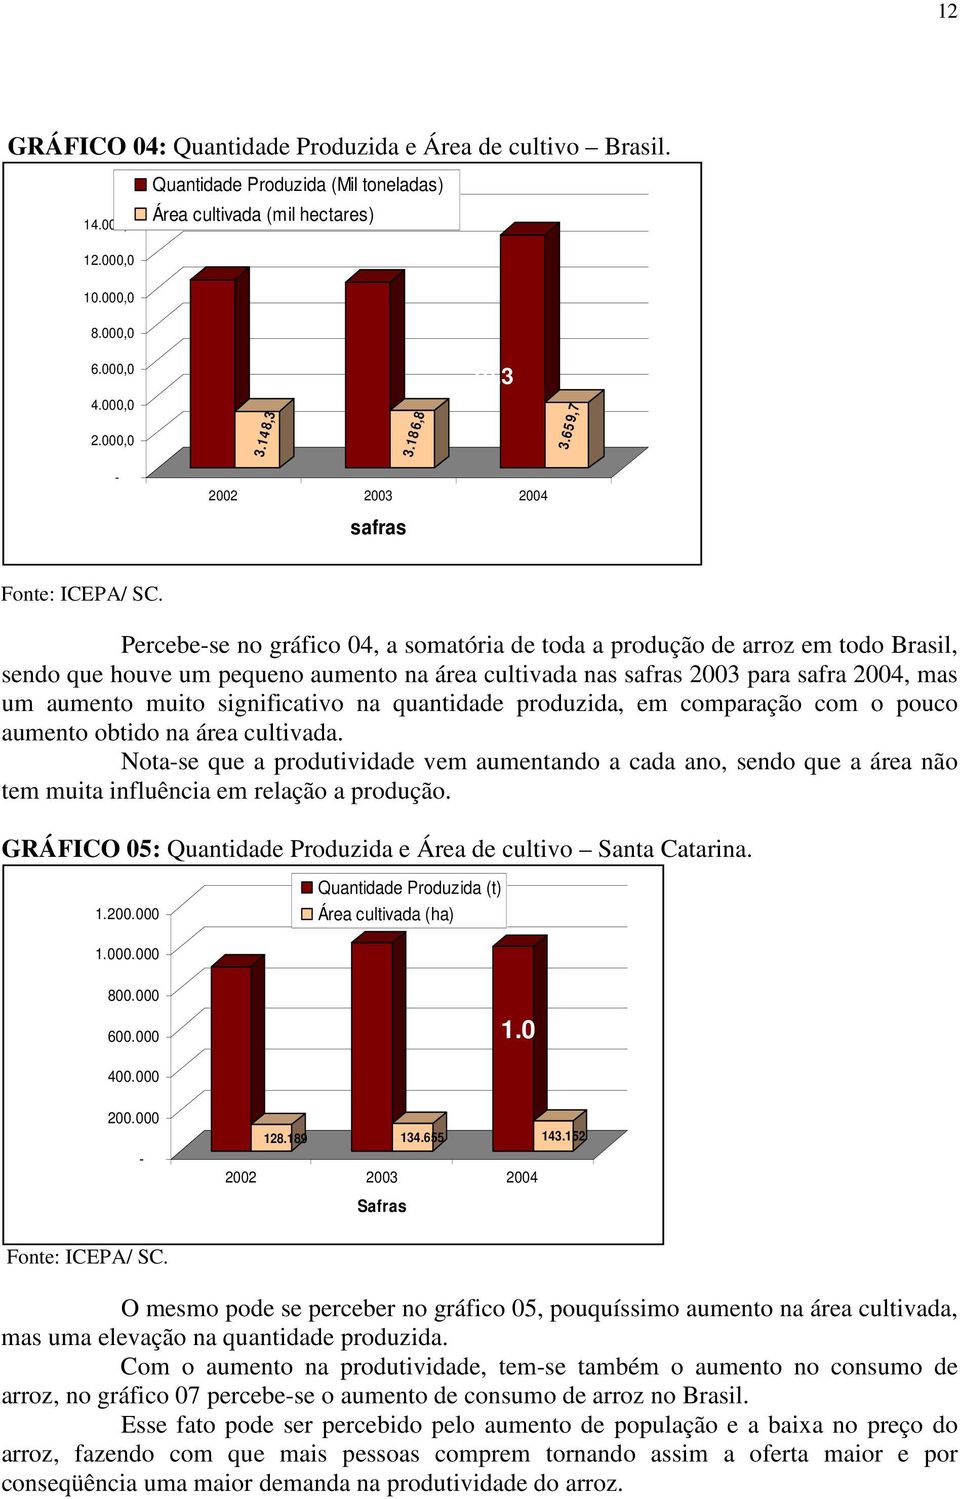 Percebe-se no gráfico 04, a somatória de toda a produção de arroz em todo Brasil, sendo que houve um pequeno aumento na área cultivada nas safras 2003 para safra 2004, mas um aumento muito